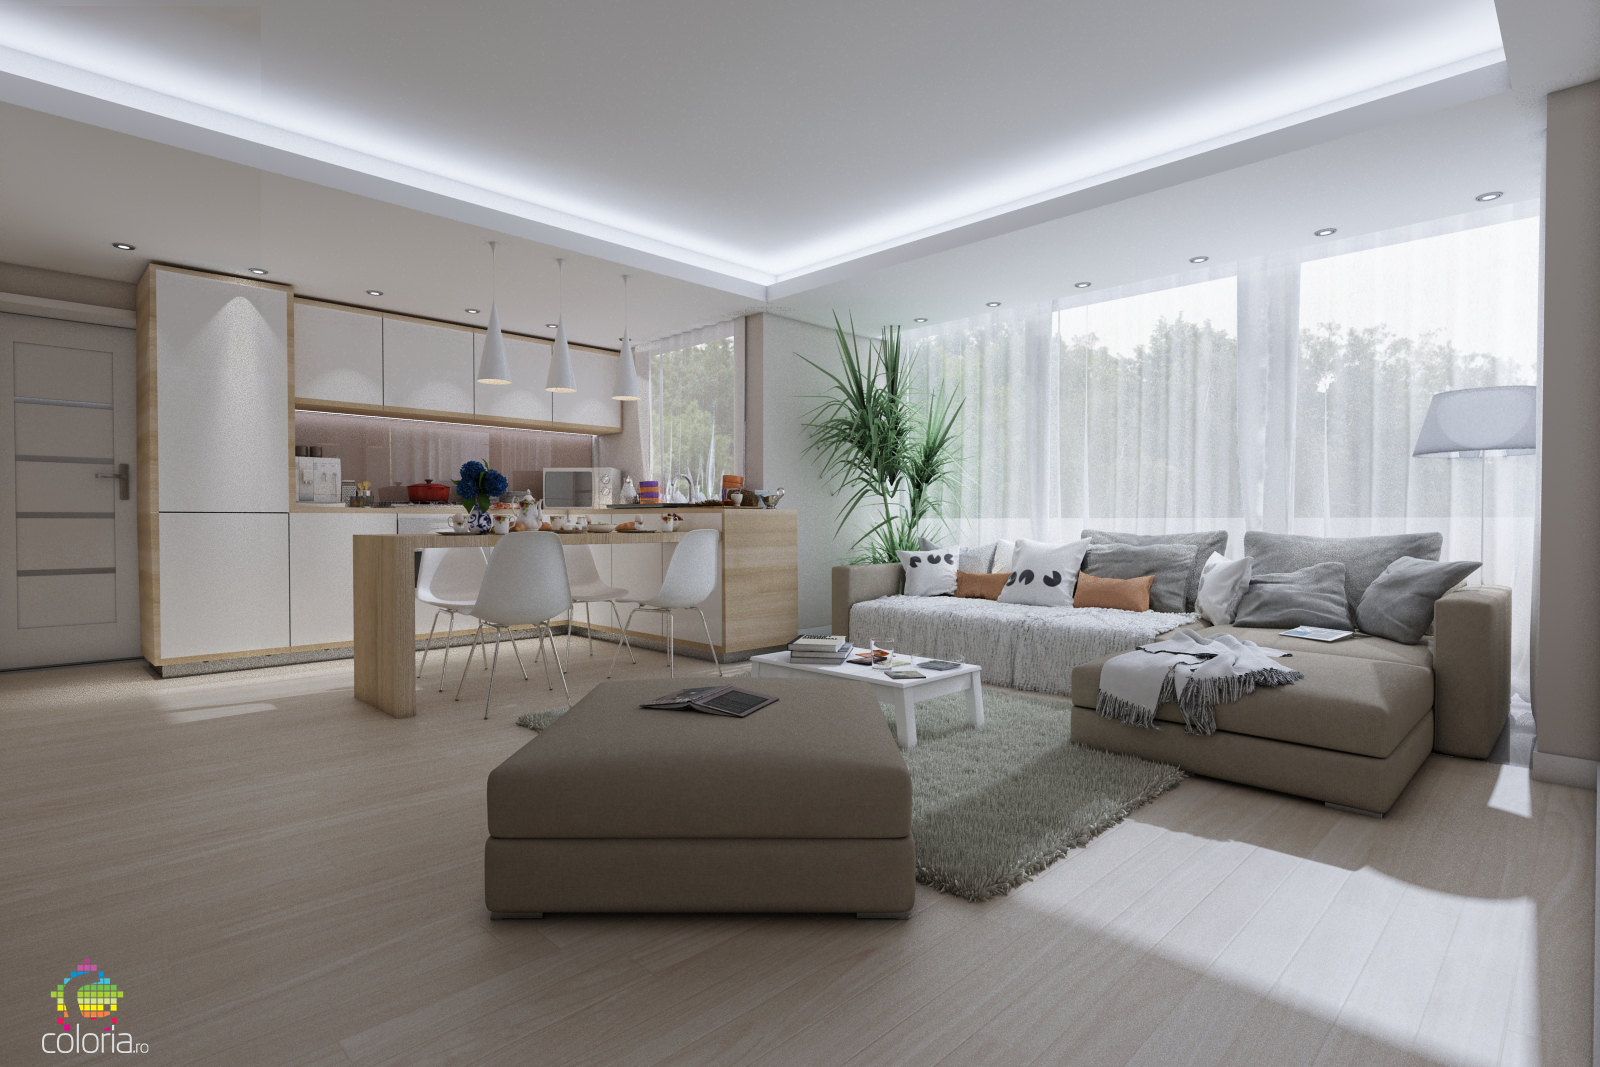 Design interior - Living